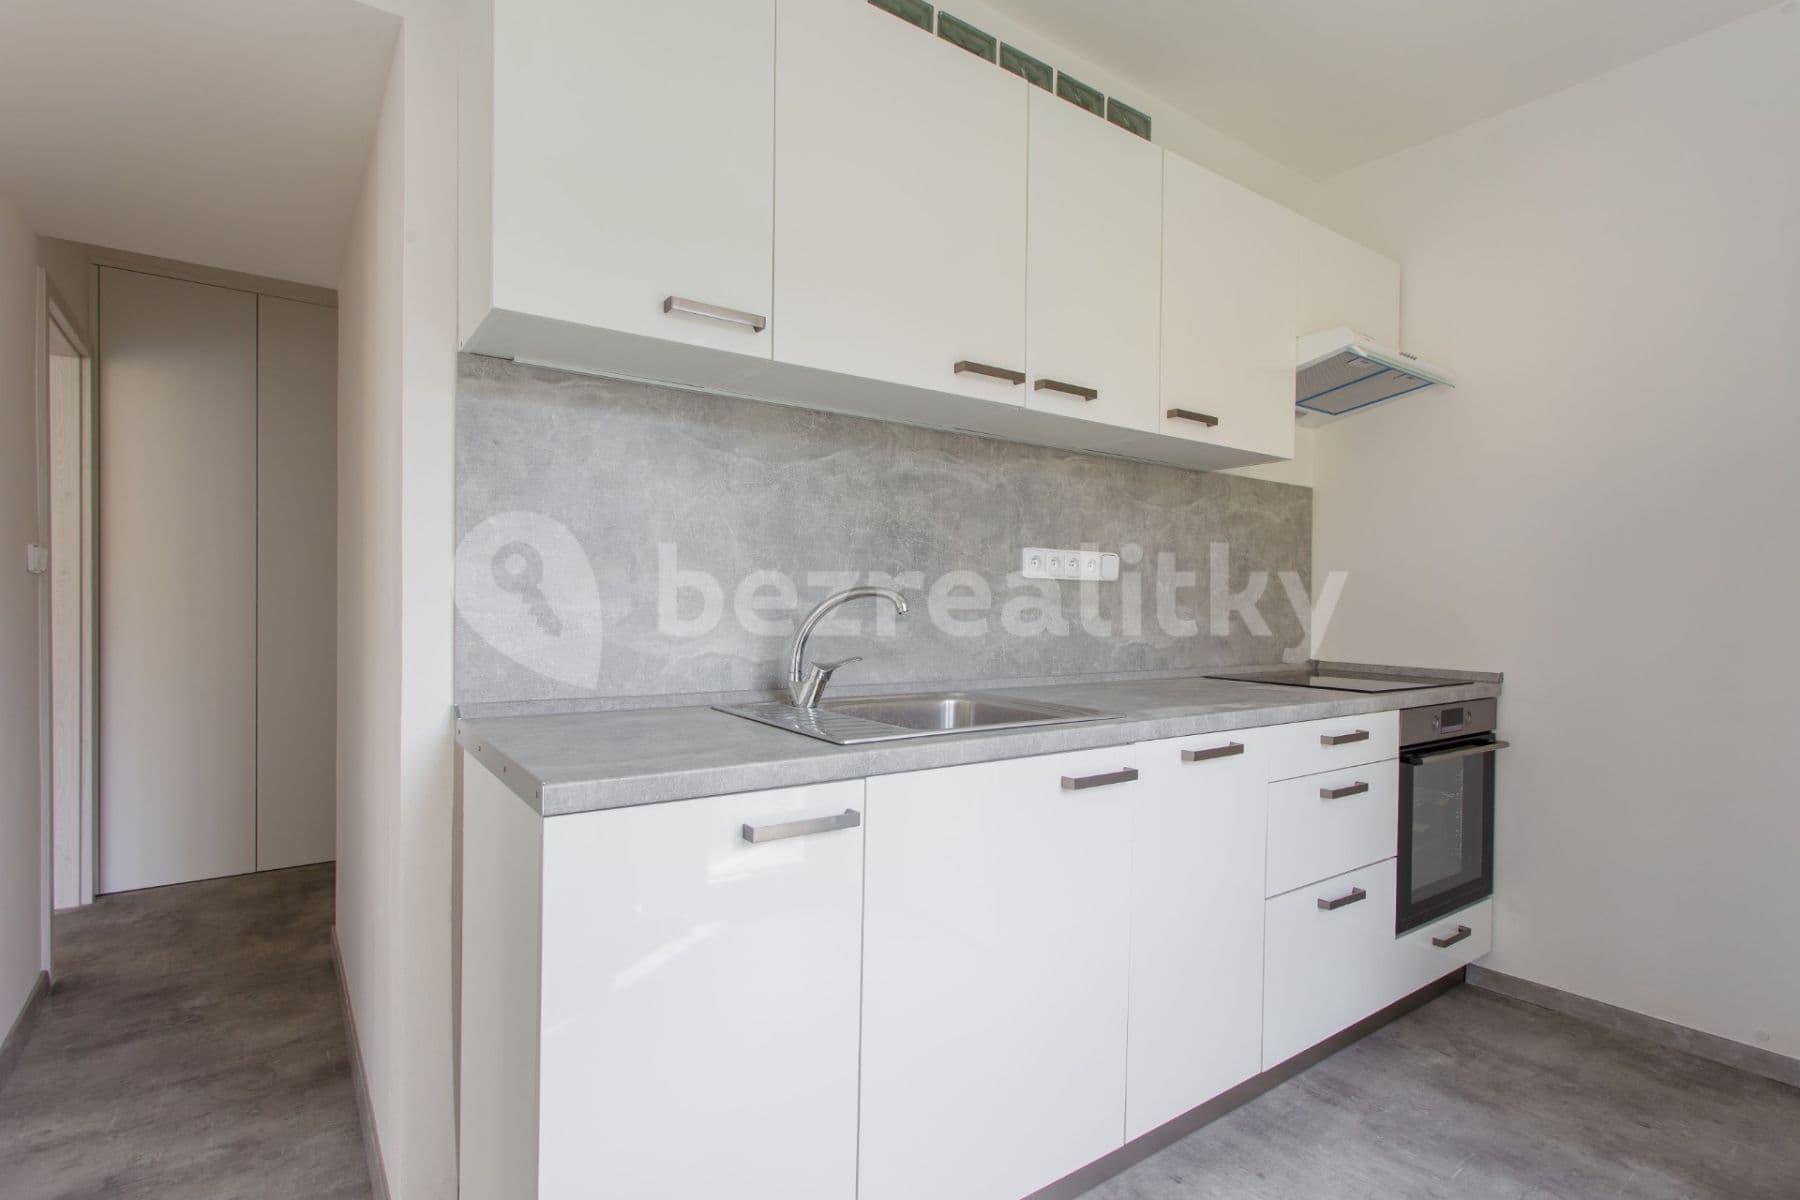 2 bedroom flat to rent, 53 m², Veletržní, Brno, Jihomoravský Region